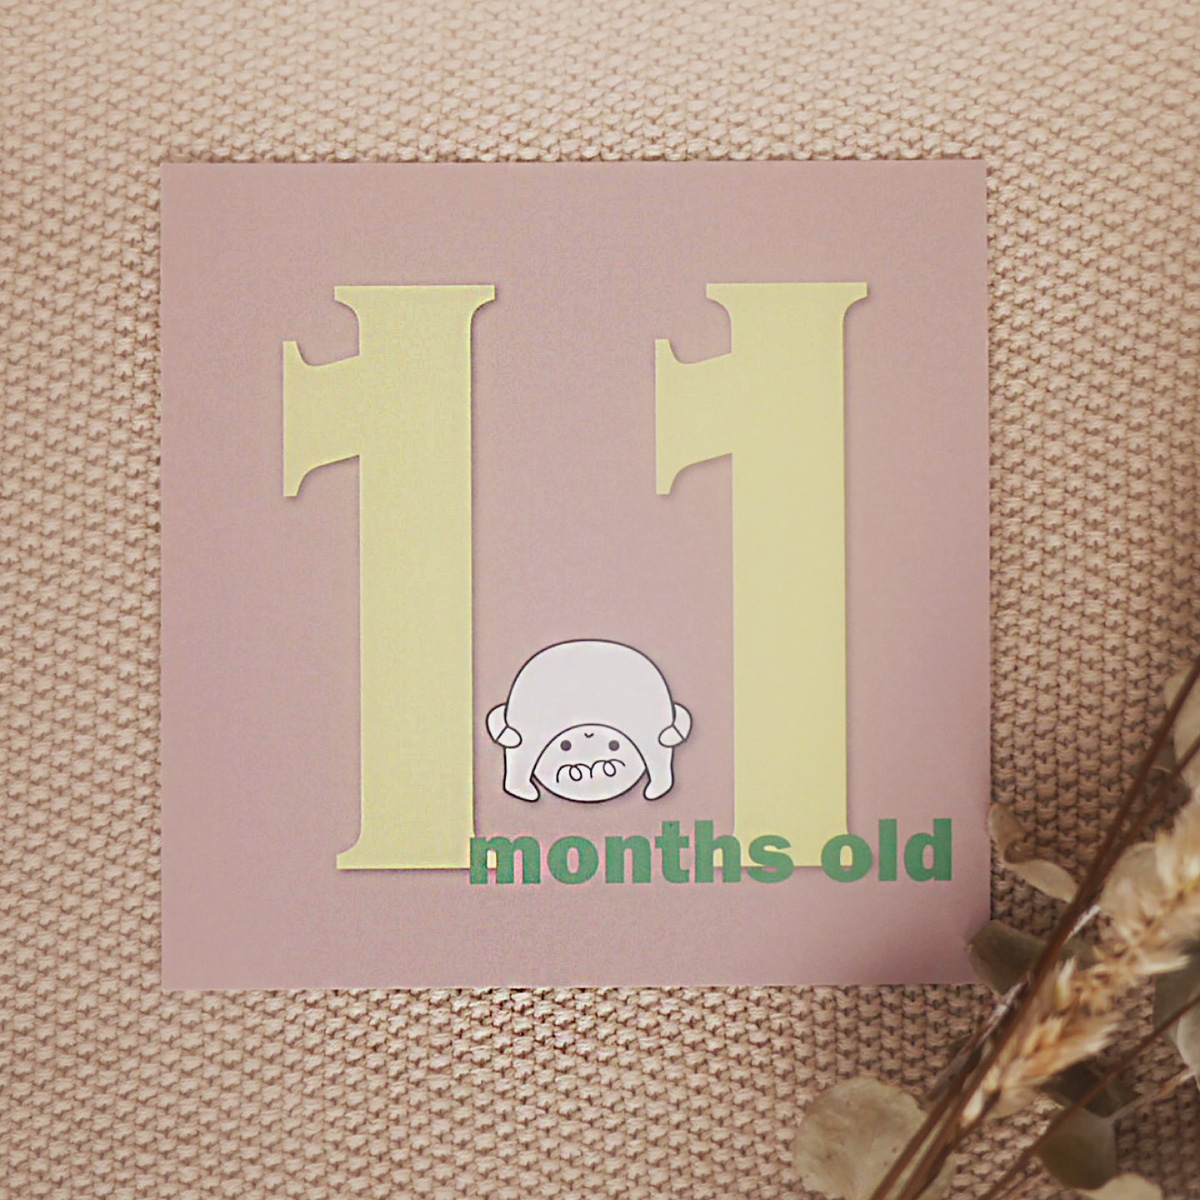  【 単品 月齢 】バースデーカードセット 誕生から1歳まで 出産準備 出産祝い 誕生日 赤ちゃん お祝い メッセージカード 男の子 女の子 おしゃれ 0歳 1歳 0ヶ月 1ヶ月 2ヶ月 3ヶ月 4ヶ月 5ヶ月 6ヶ月 7ヶ月 8ヶ月 9ヶ月 10ヶ月 11ヶ月 12ヶ月